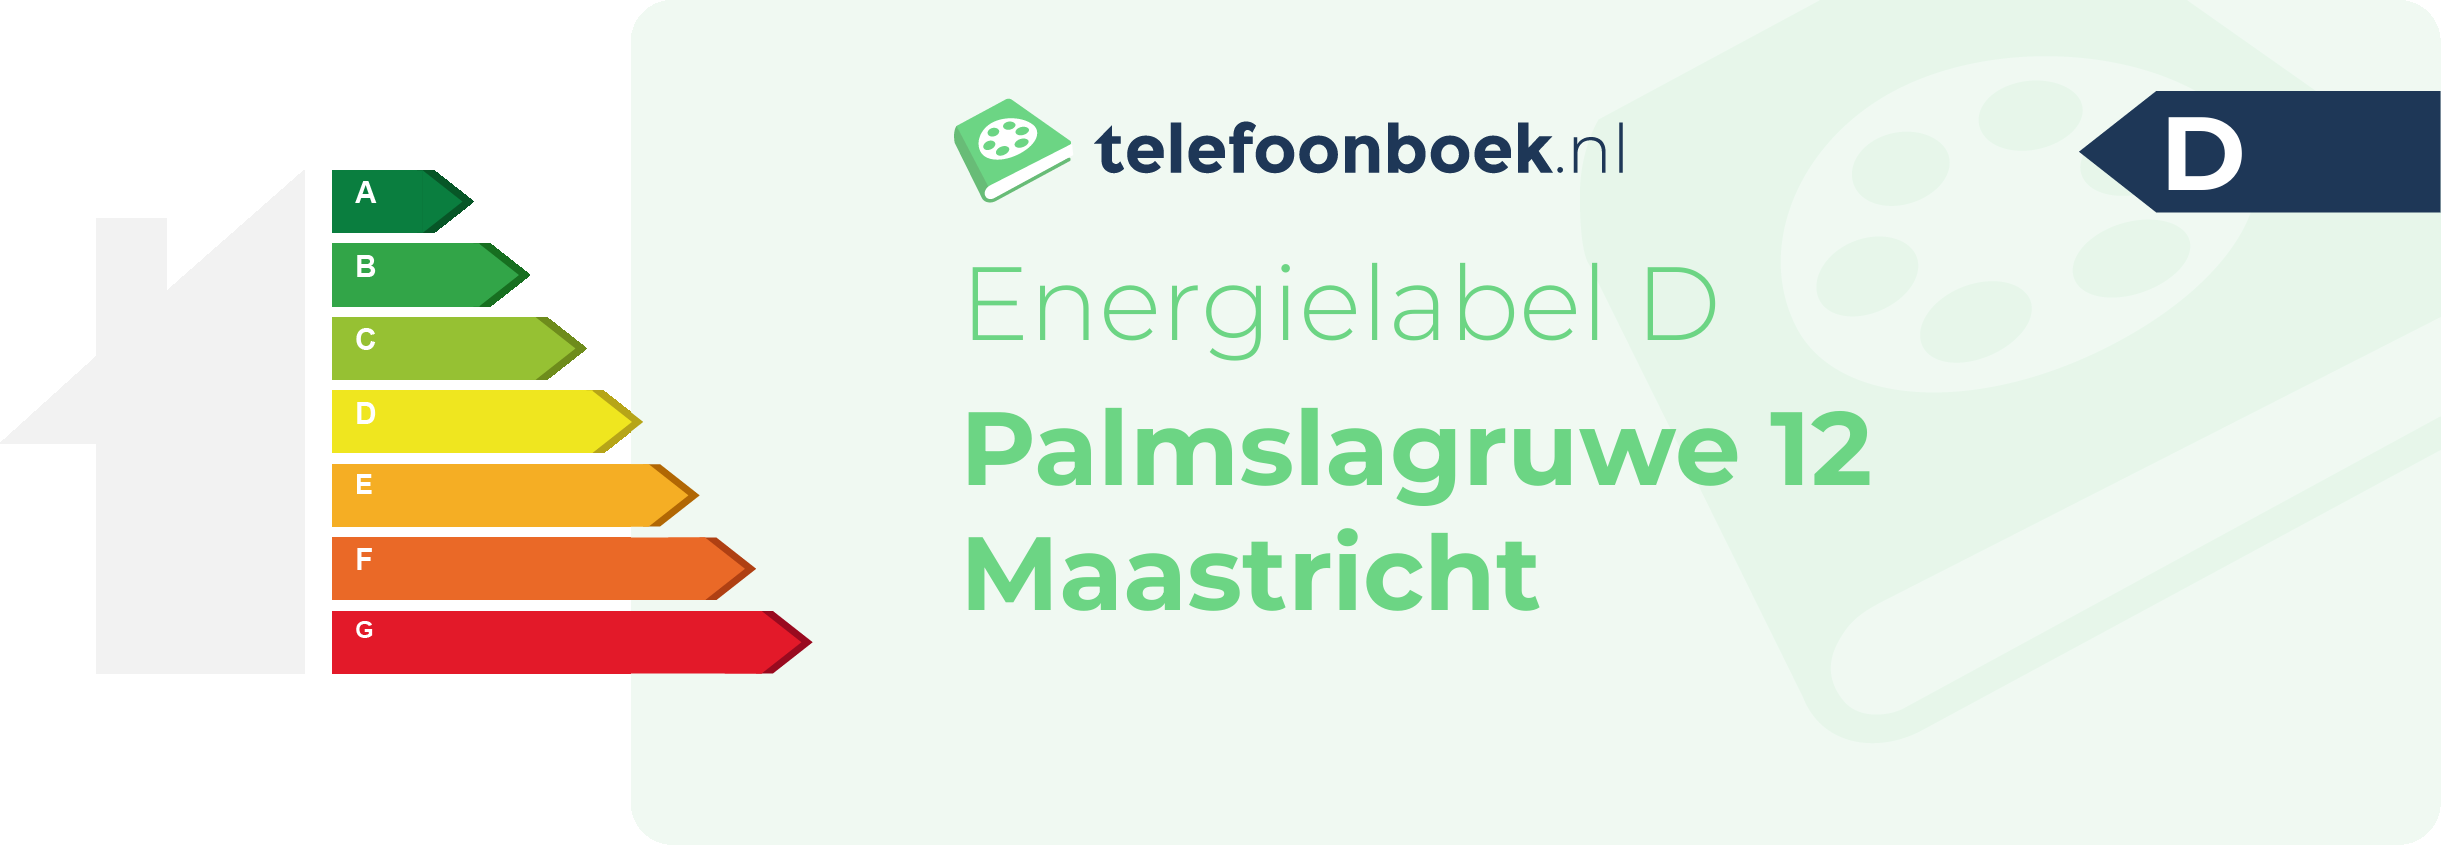 Energielabel Palmslagruwe 12 Maastricht